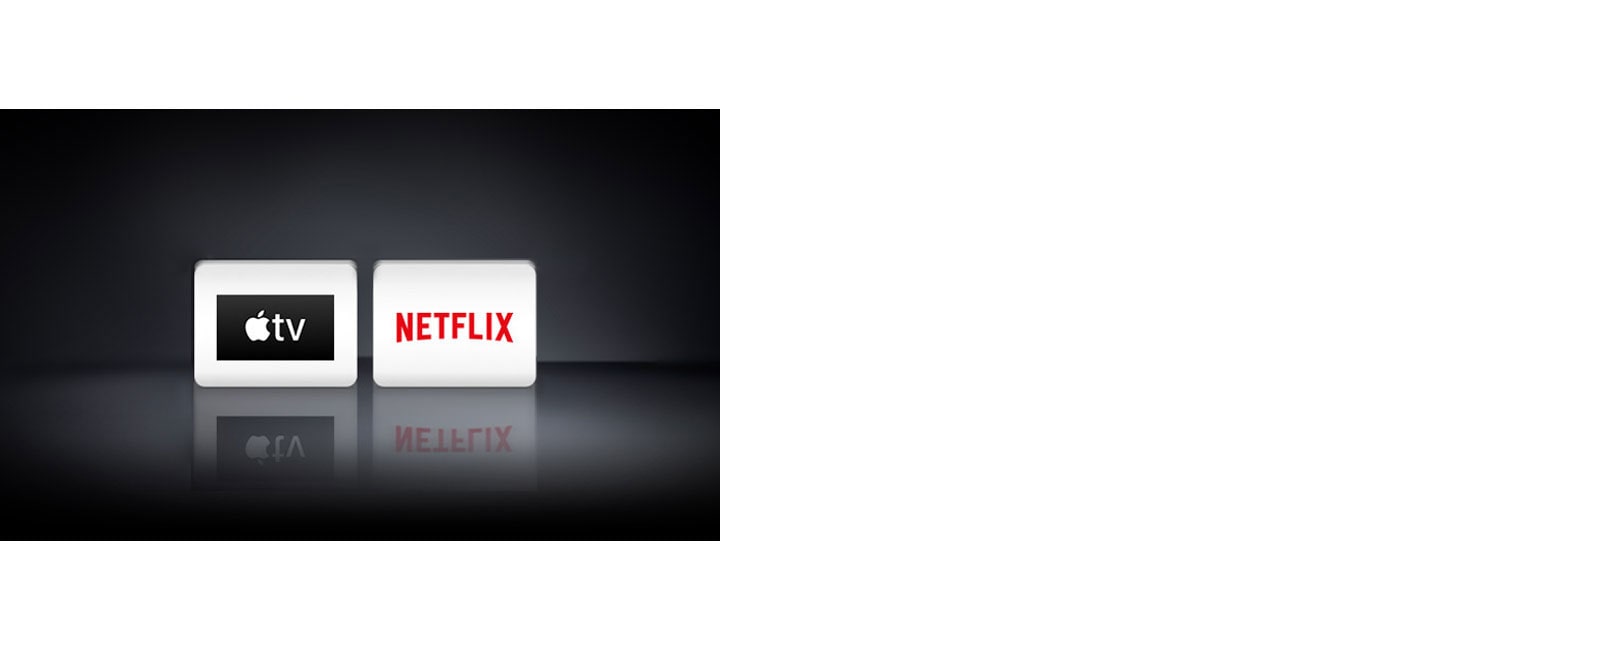 Két logó: Apple TV alkalmazás, Netflix